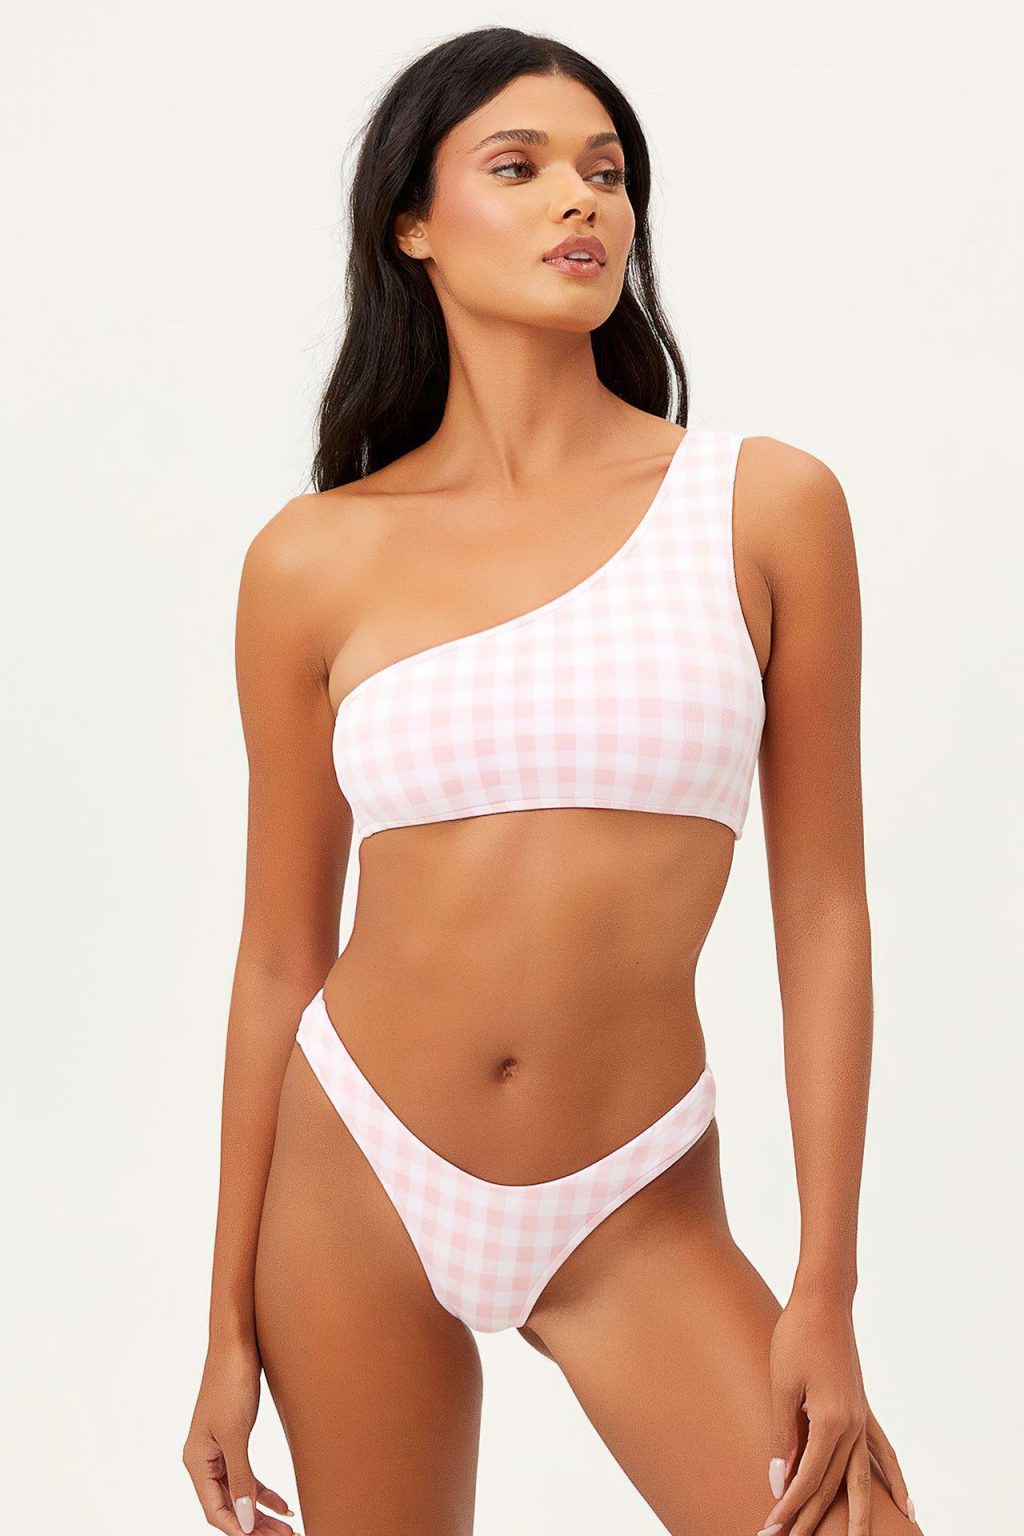 Daniela Braga Bikini